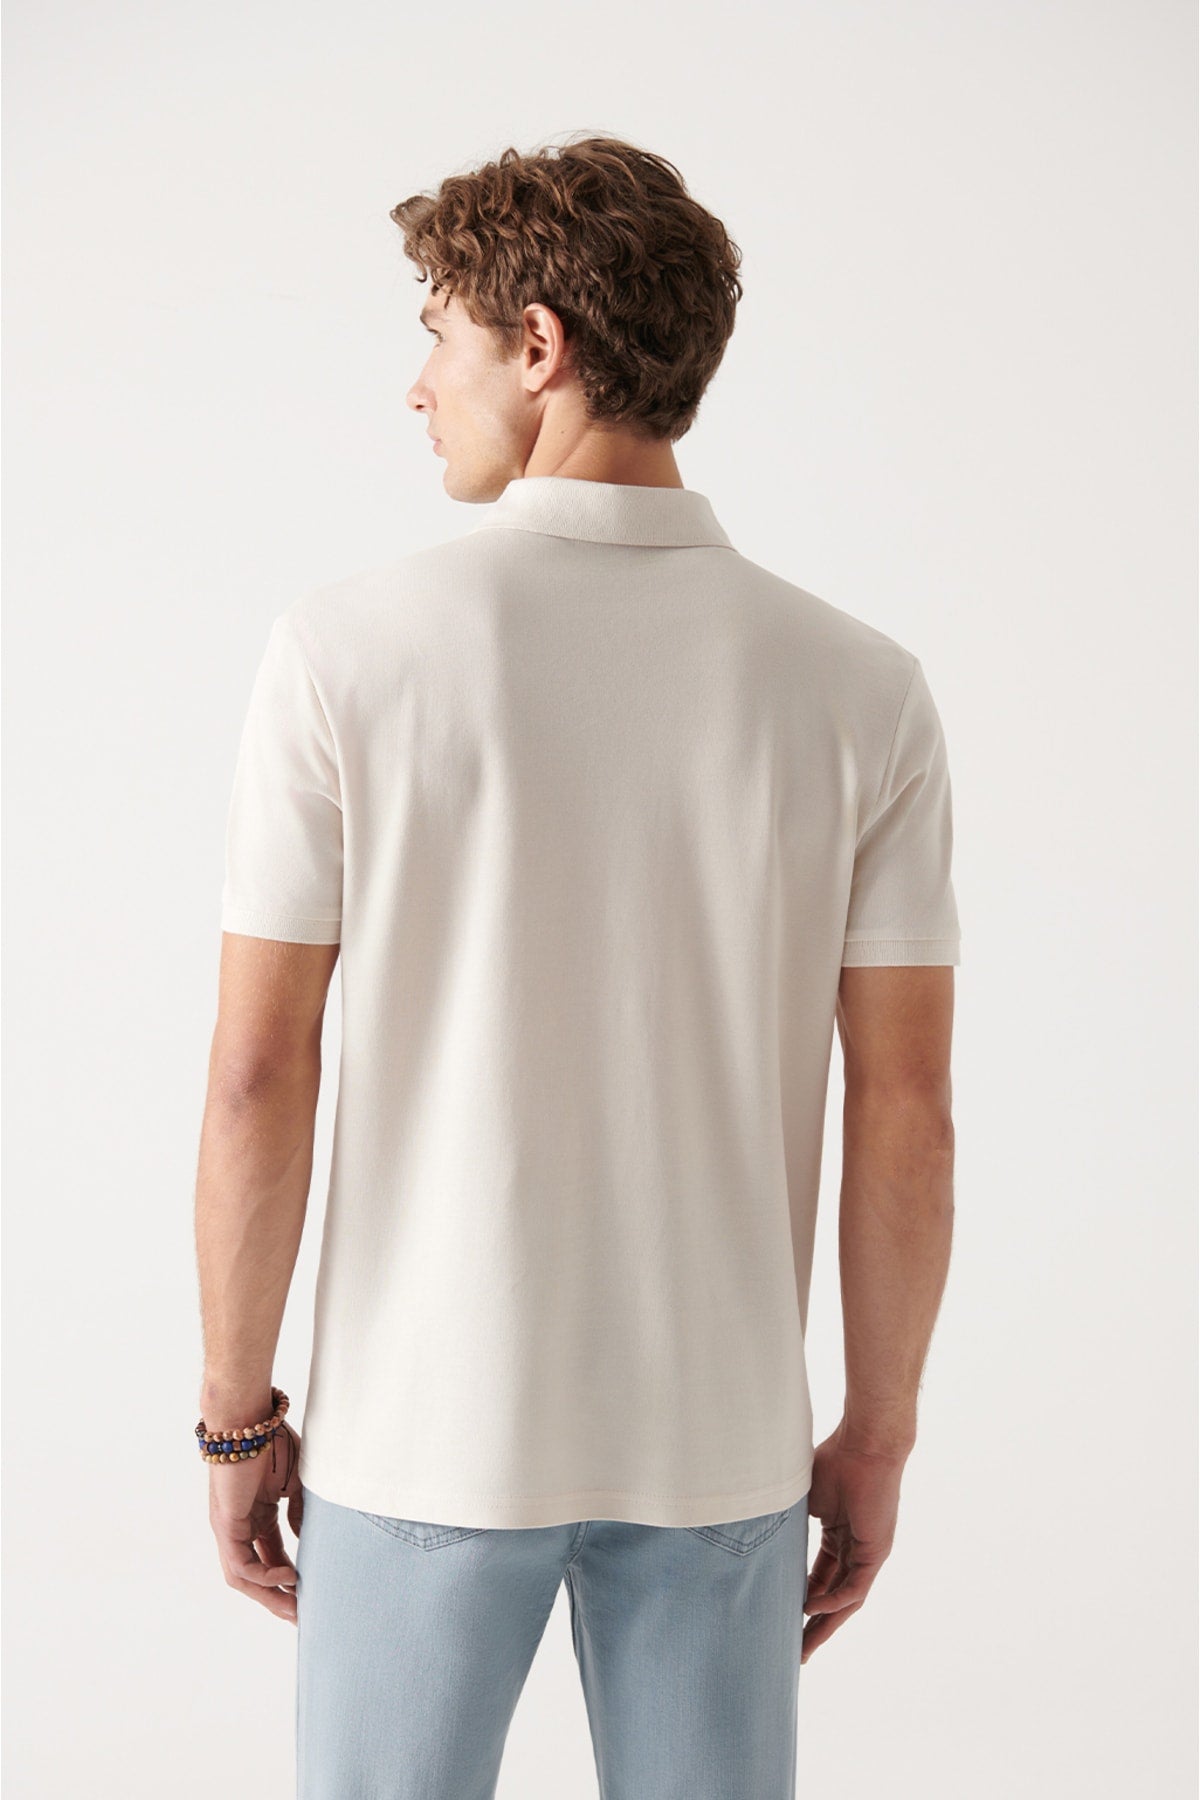  Мужская бежевая дышащая футболка стандартного кроя из 100 % хлопка с воротником-поло E001004